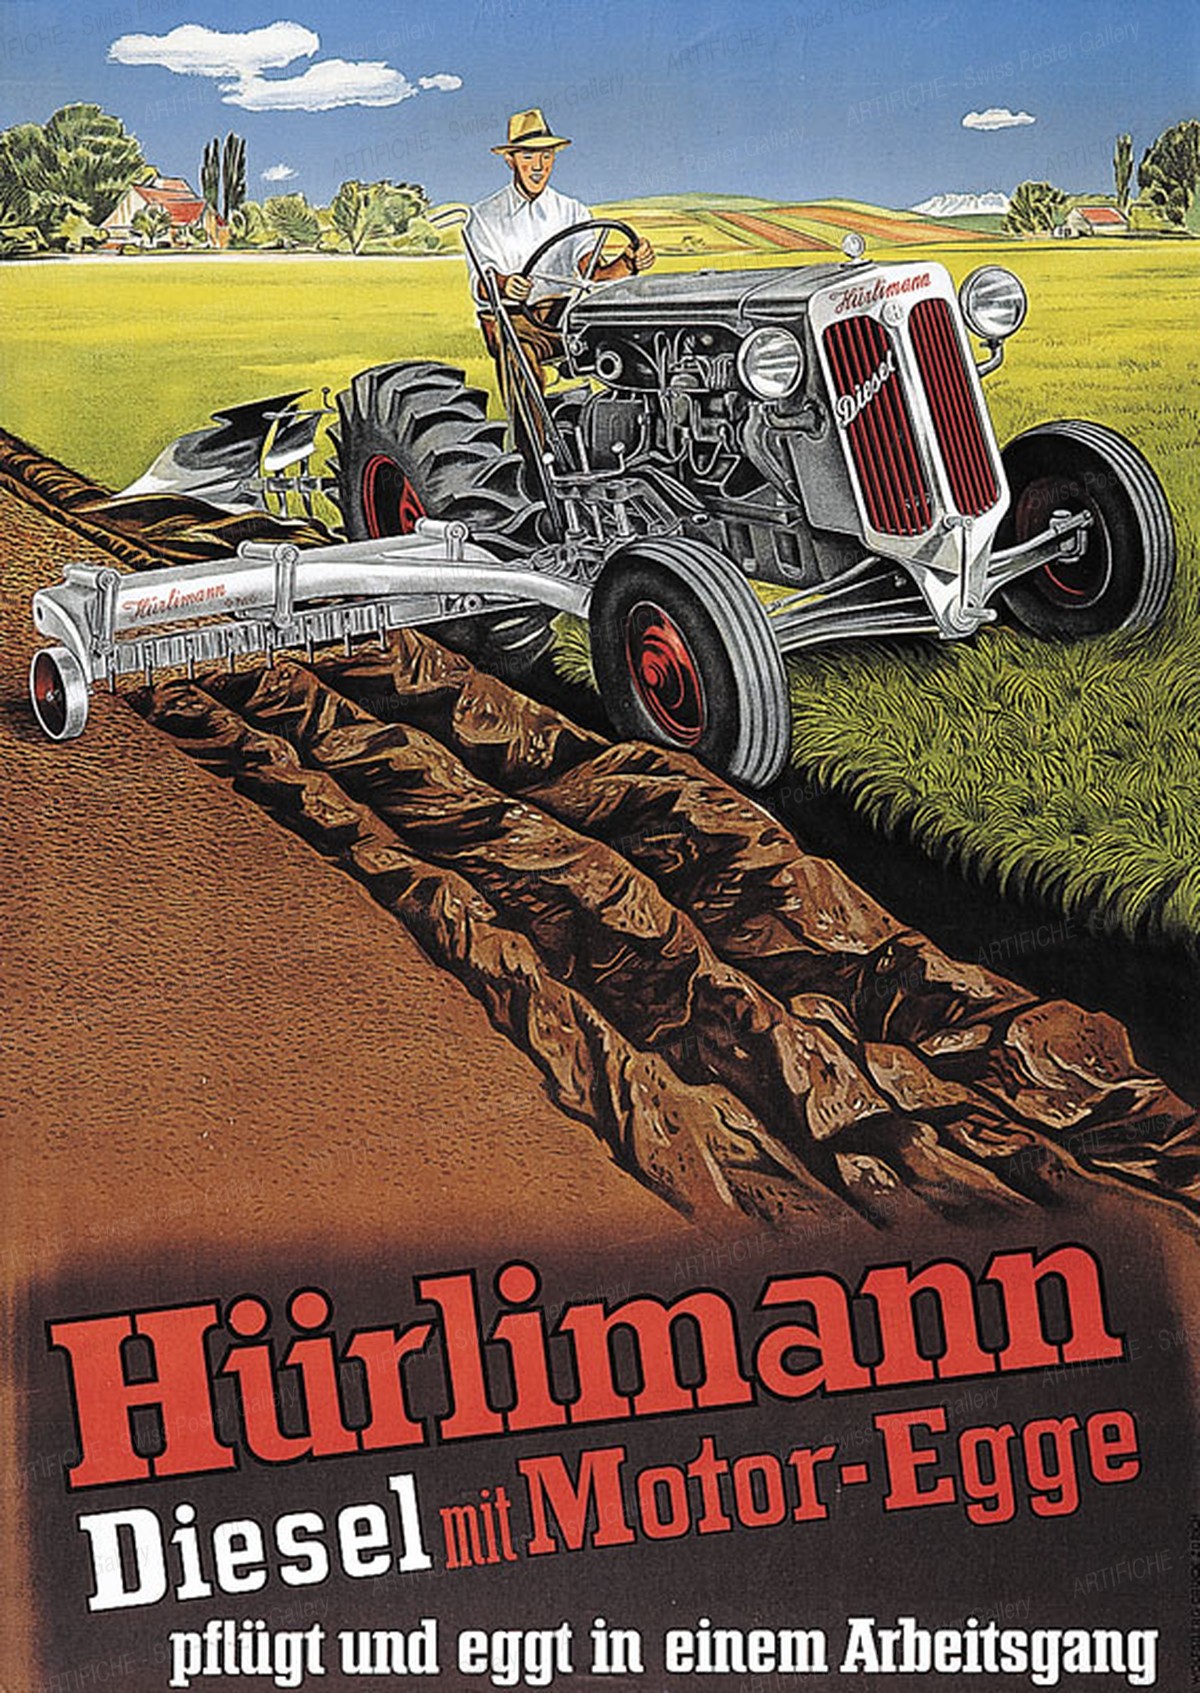 Hürlimann diesel with motor harrow, Artist unknown